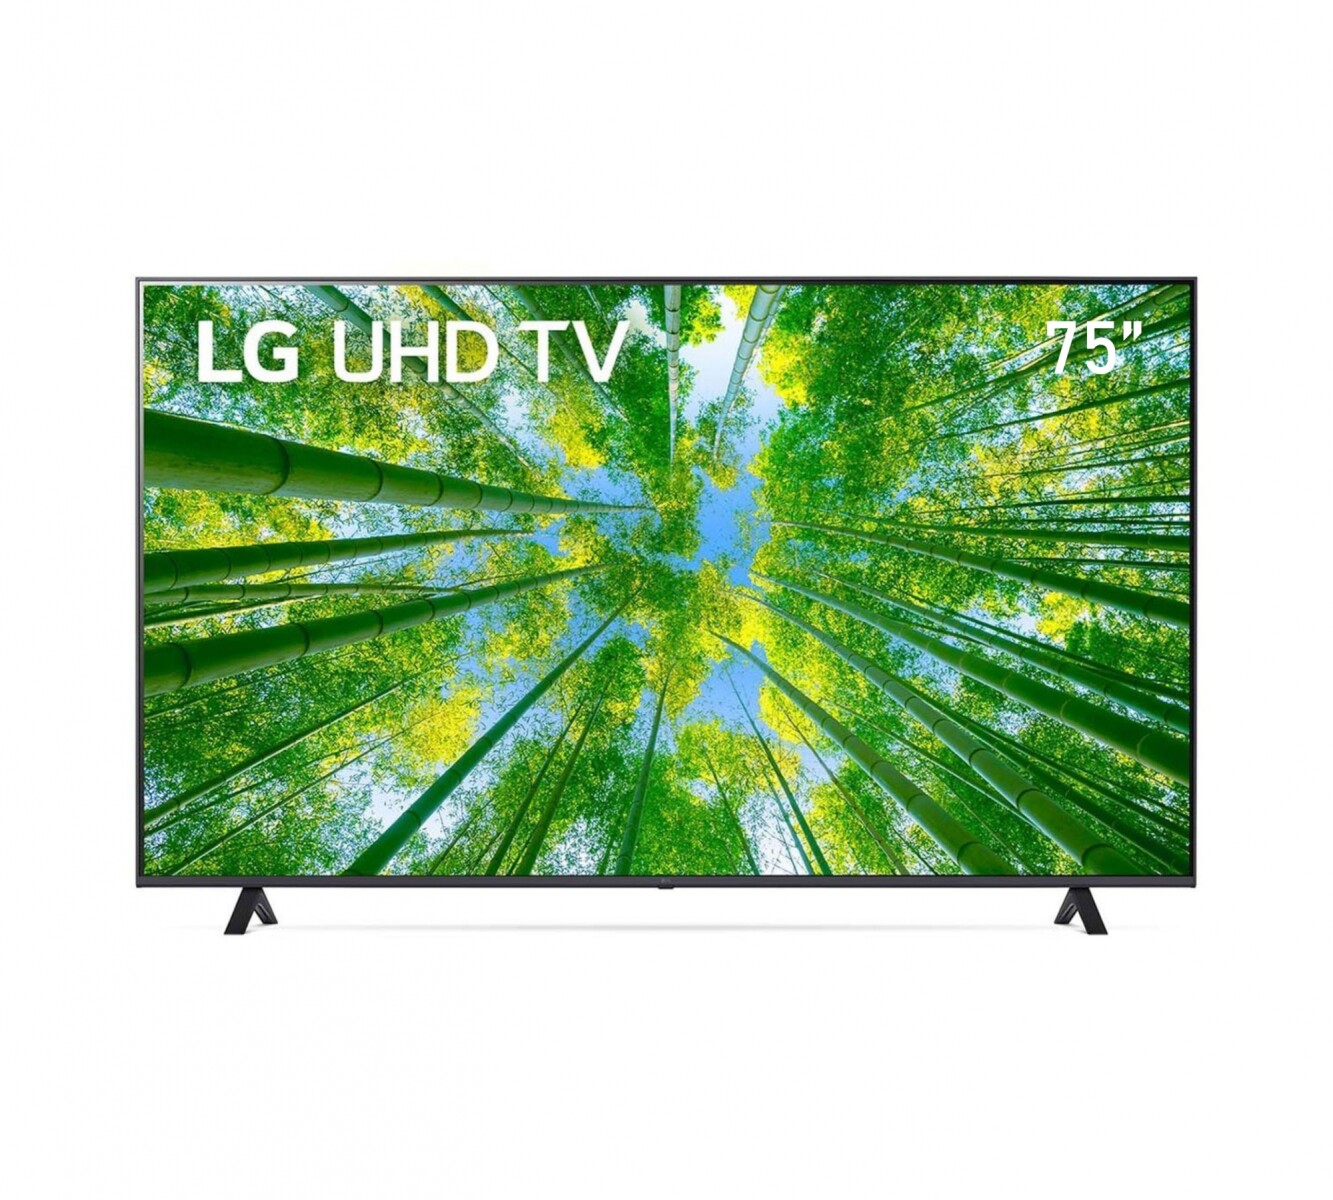 TV LG - UHD - Smart TV - 75'' 